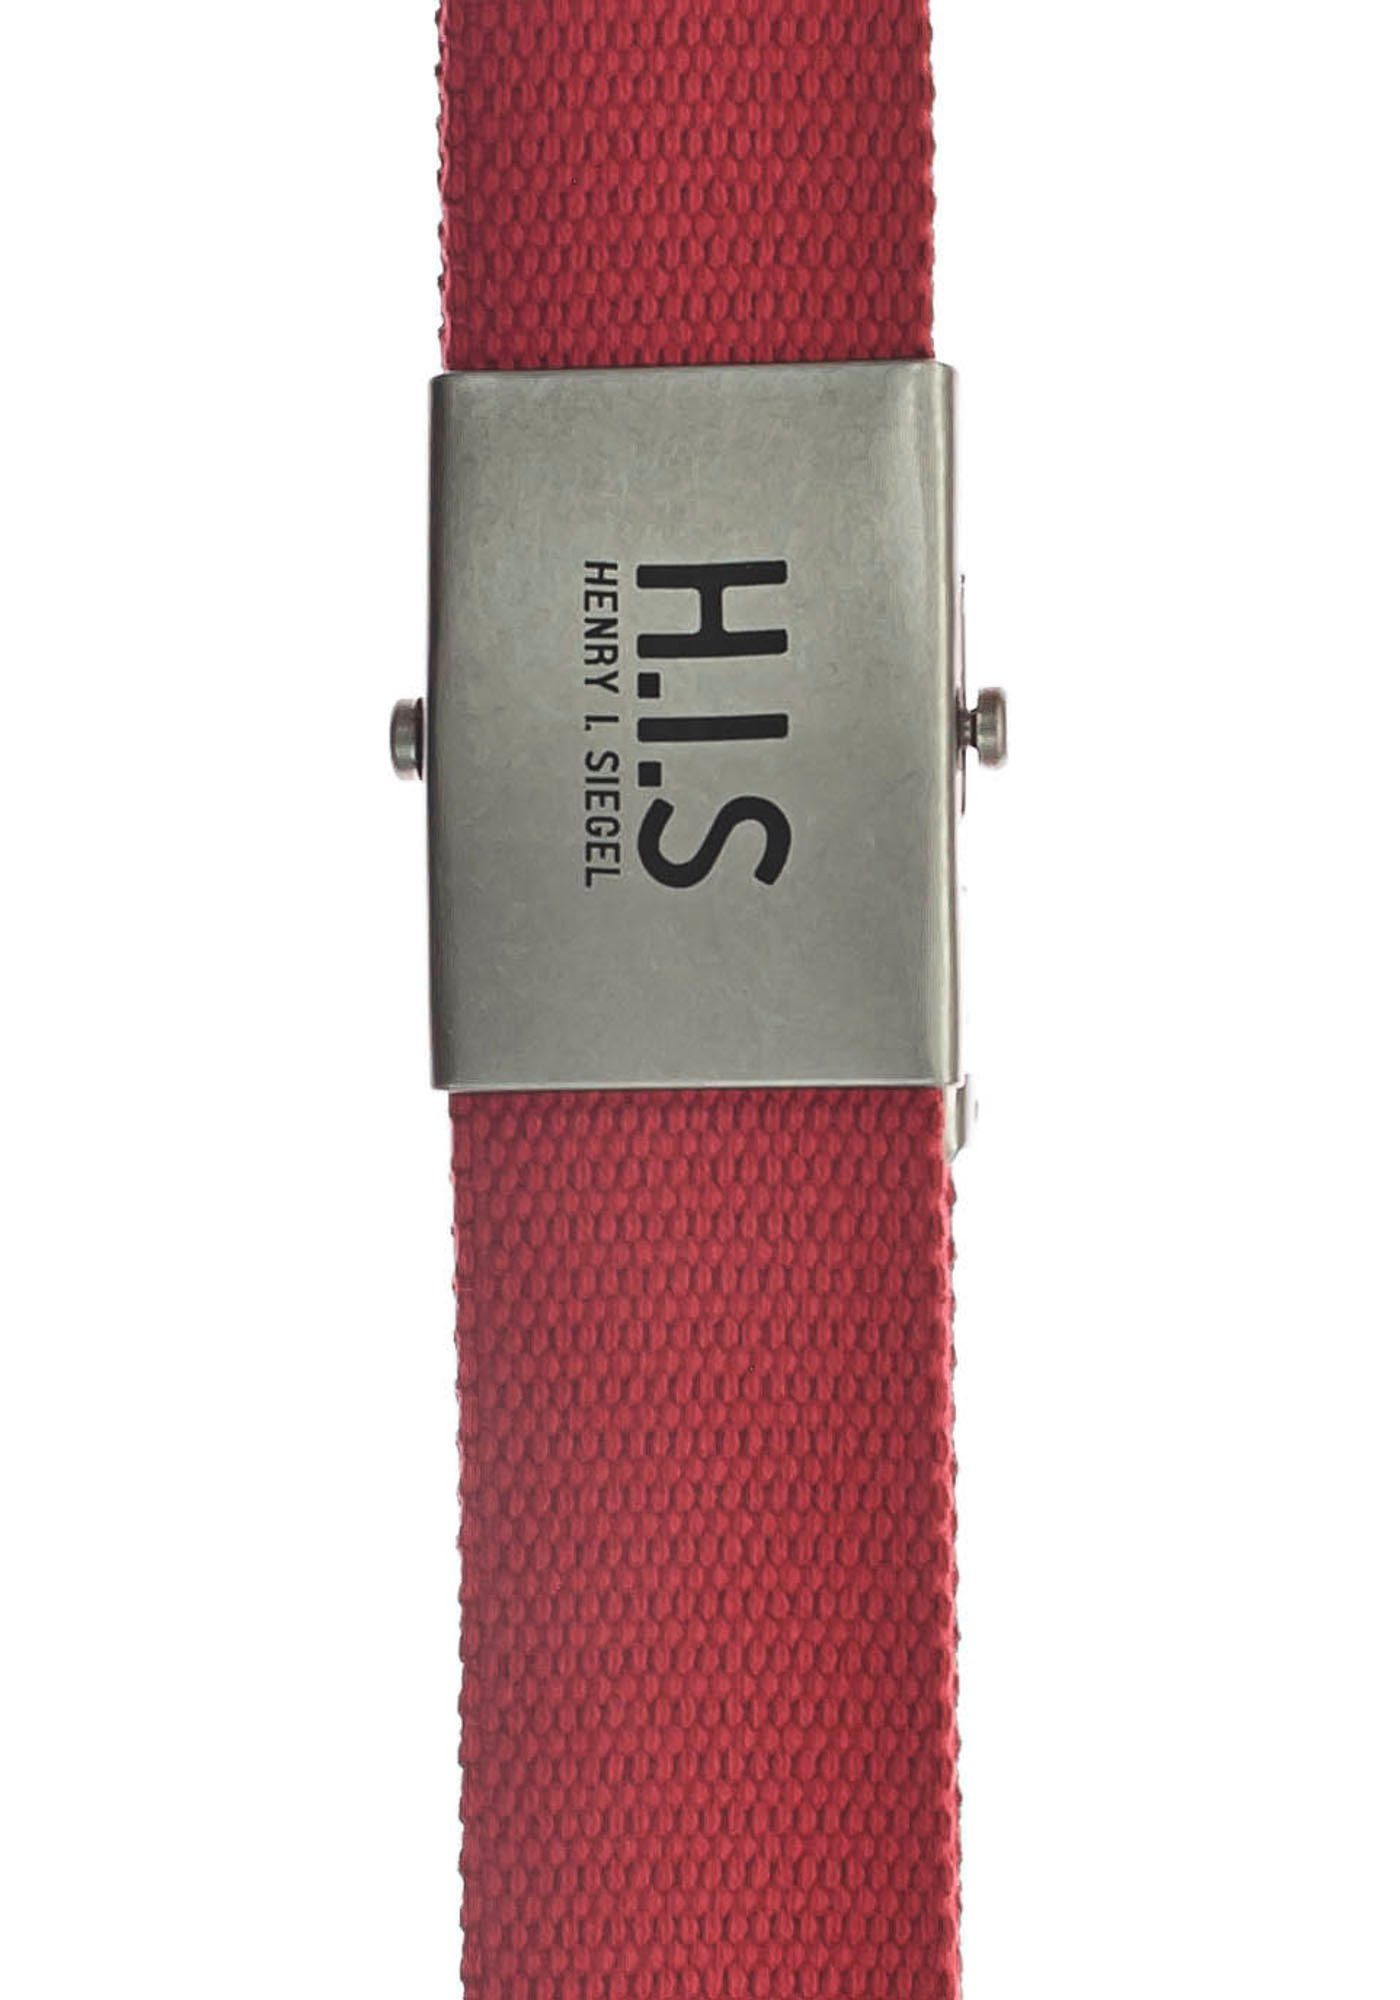 H.I.S Stoffgürtel Bandgürtel mit H.I.S Logo Koppelschließe der auf rot